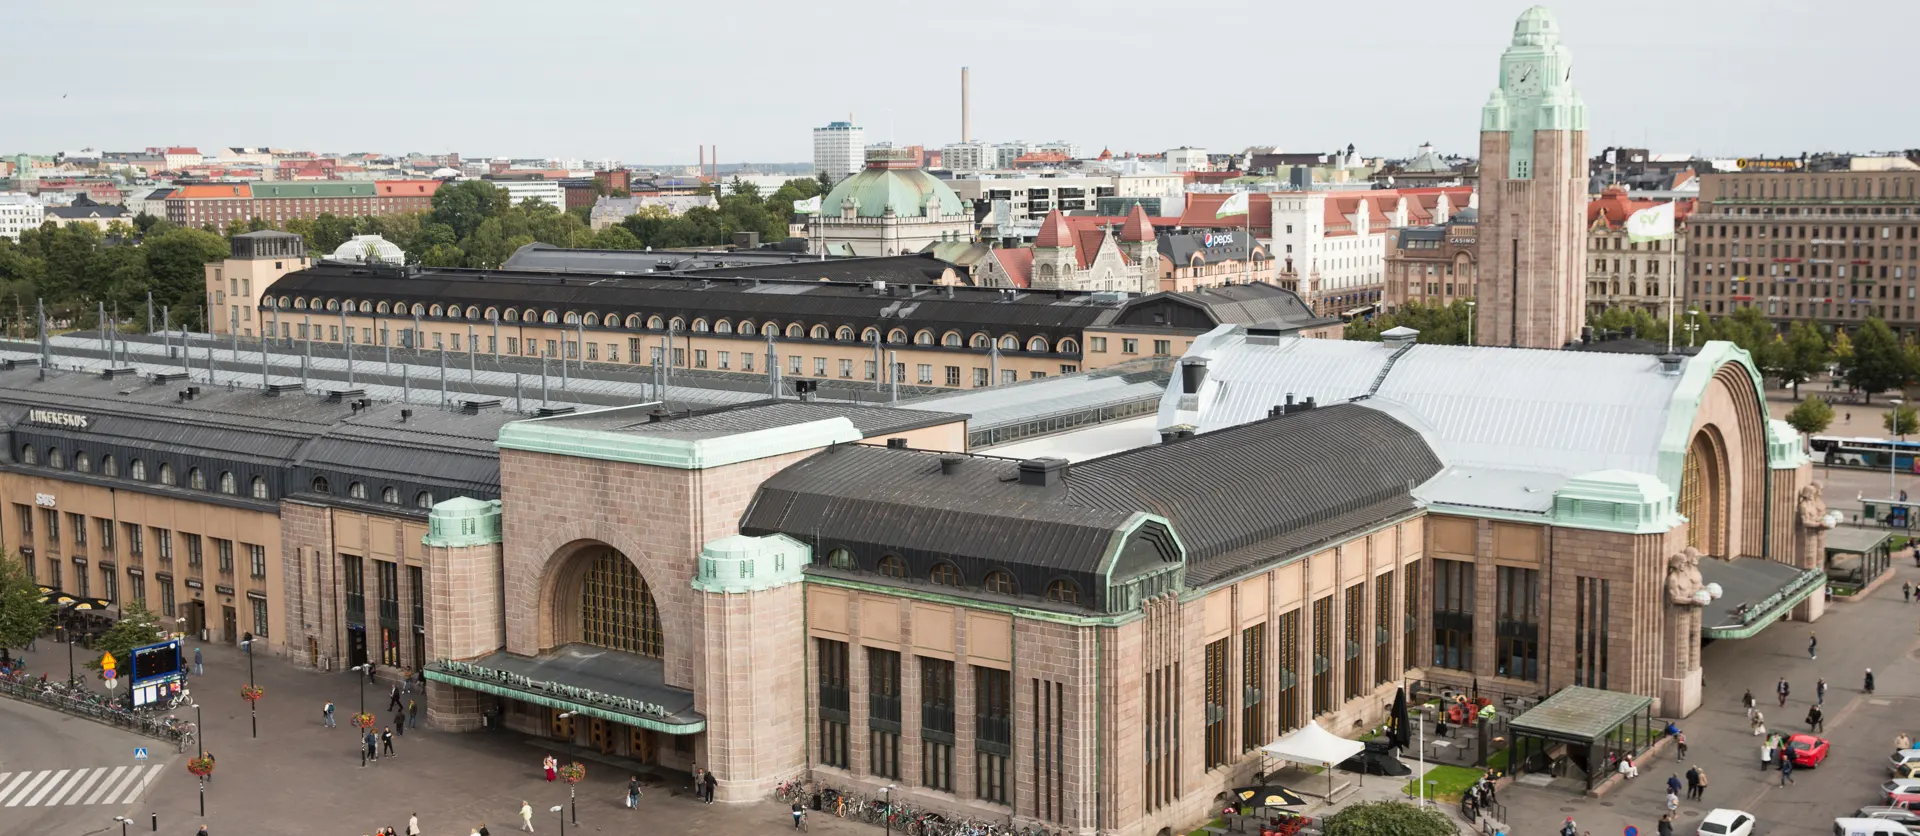 Helsingin päärautatieasema on pääkaupunkiseudun lähi-, kaukojuna- ja metroliikenteen solmukohta. Se on kävijämäärältään Suomen vilkkain rakennus; aseman kautta kulkee päivittäin jopa 240 000 matkustajaa!